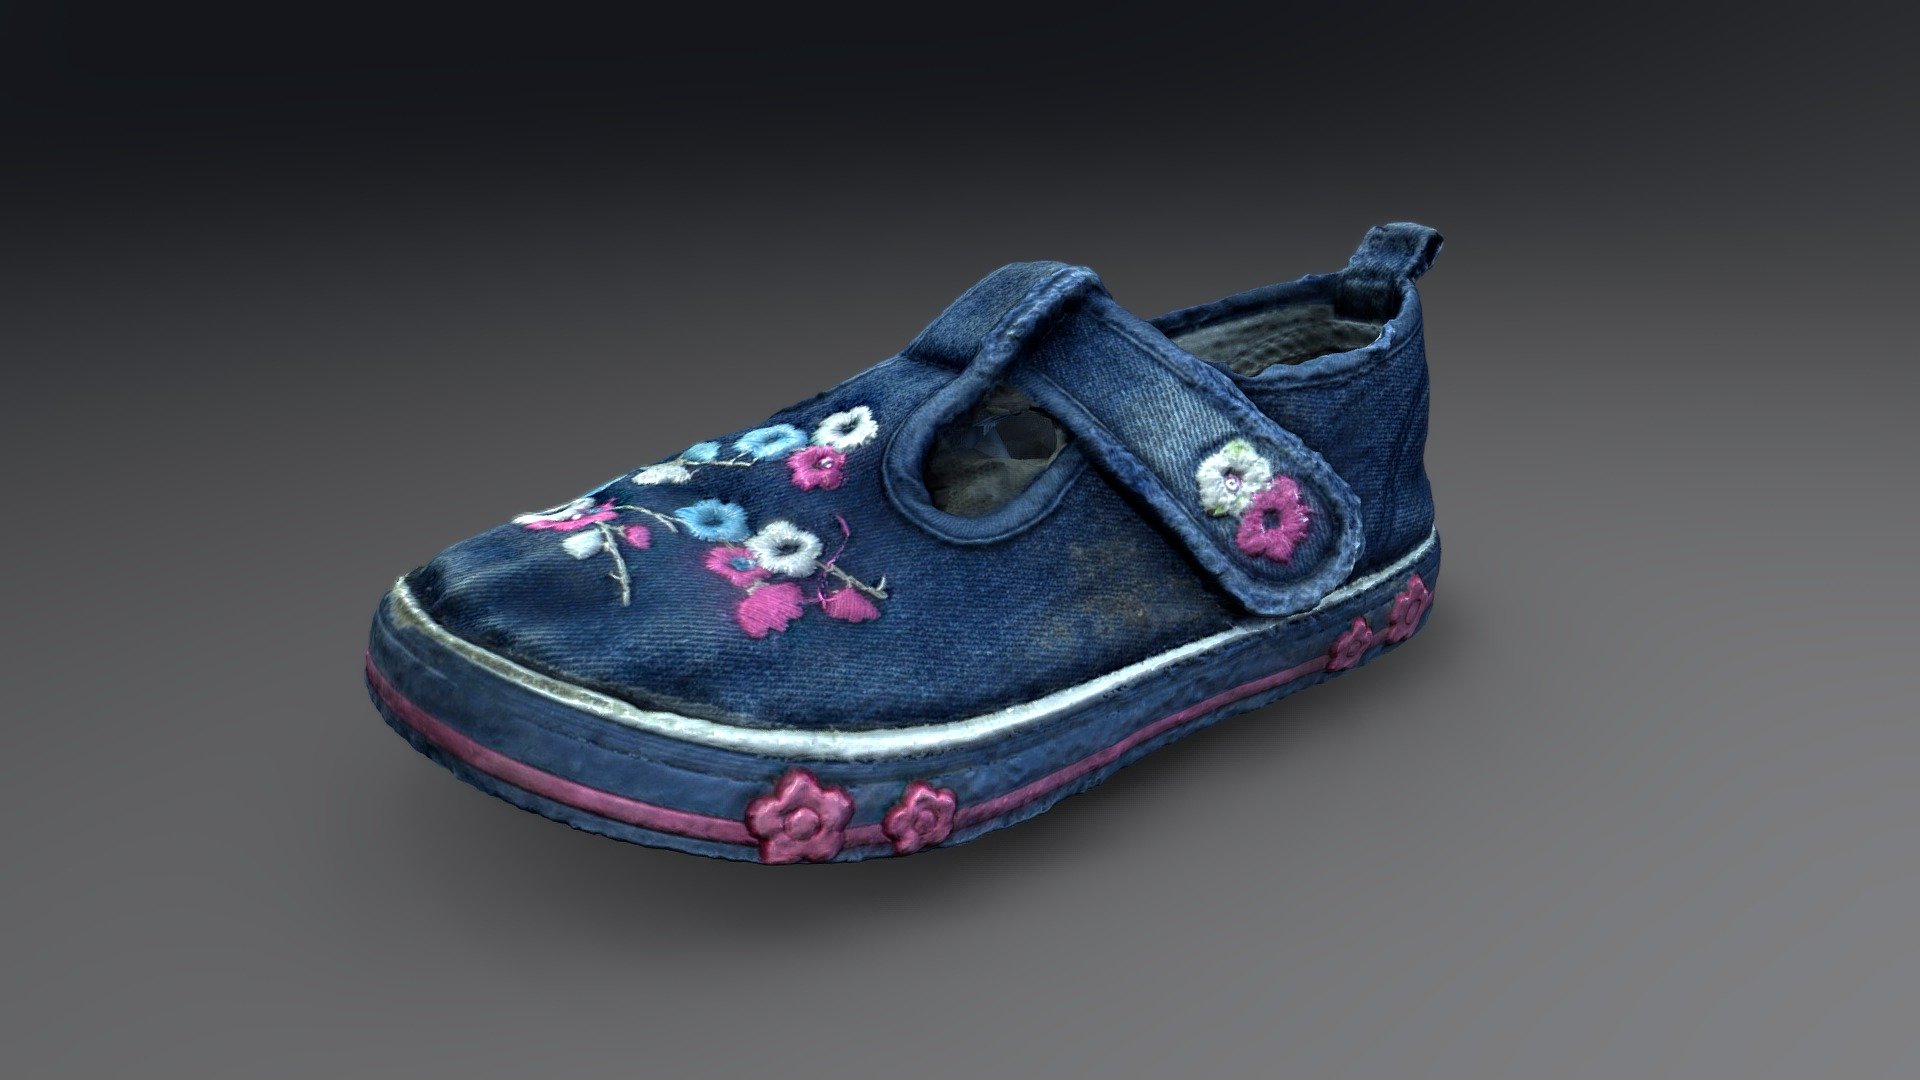 Shoe with flowers pattern - Child Shoe - Download Free 3D model by desktopdan 3d model